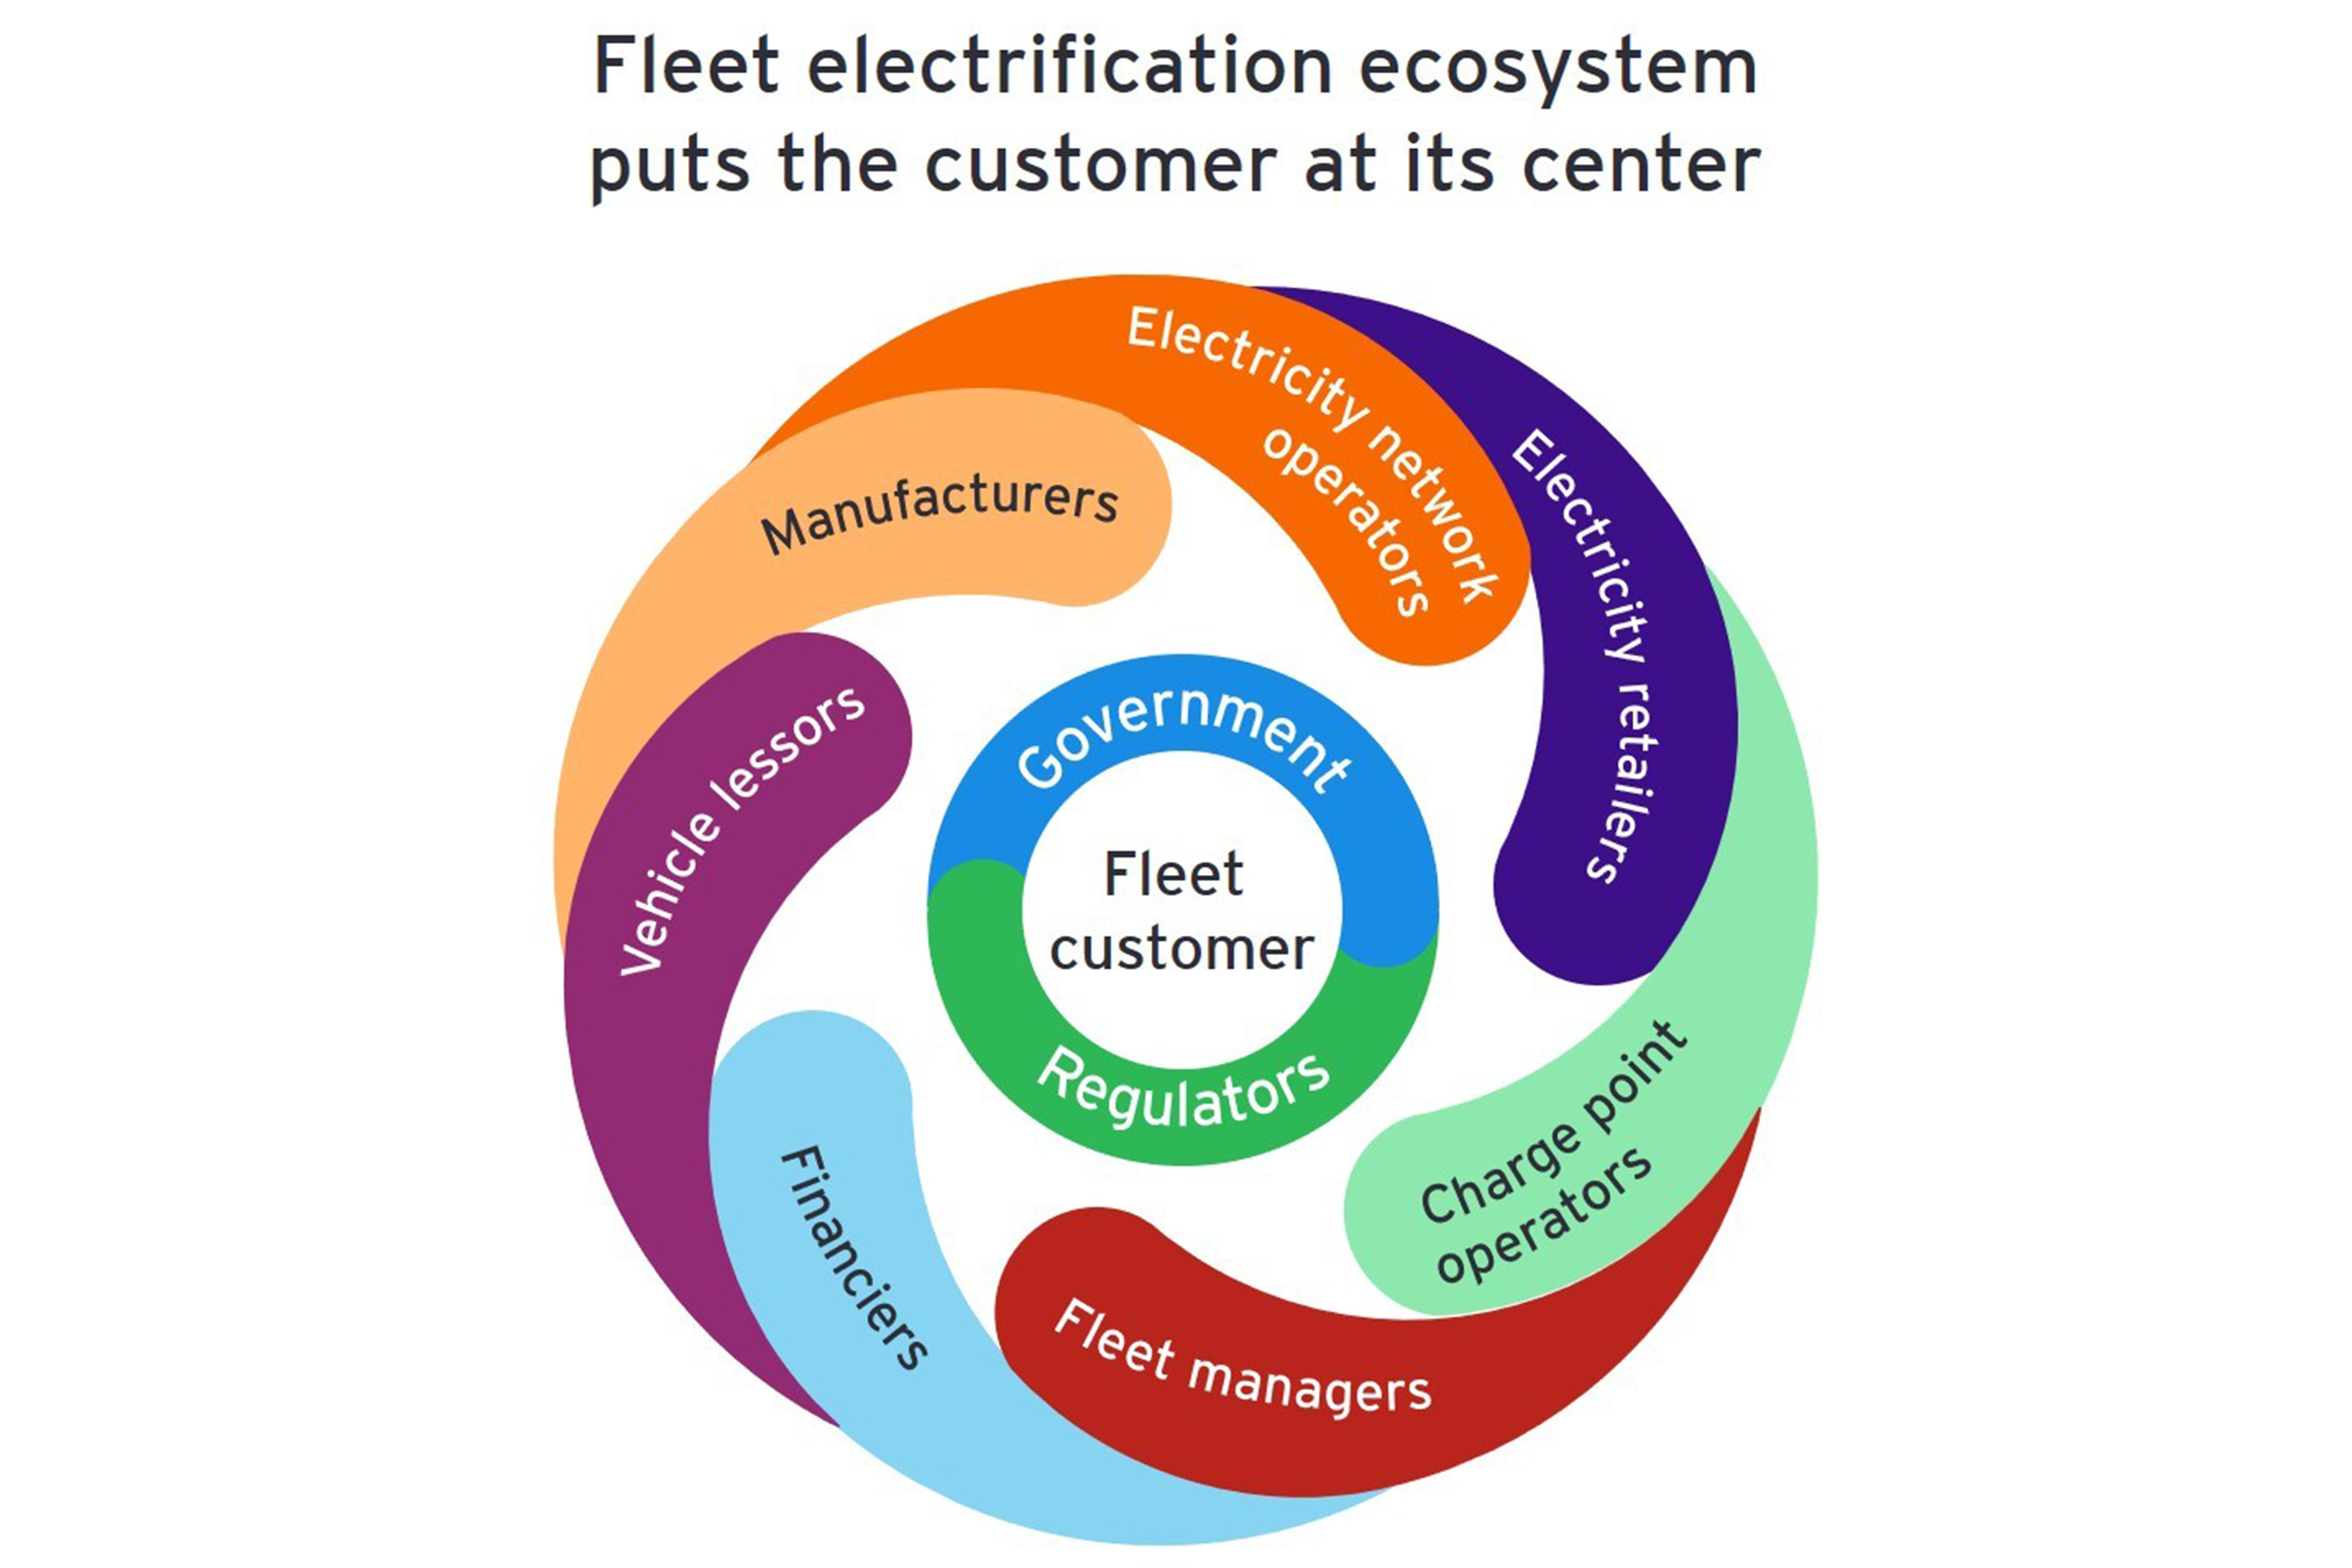 Fleet electrification ecosystem